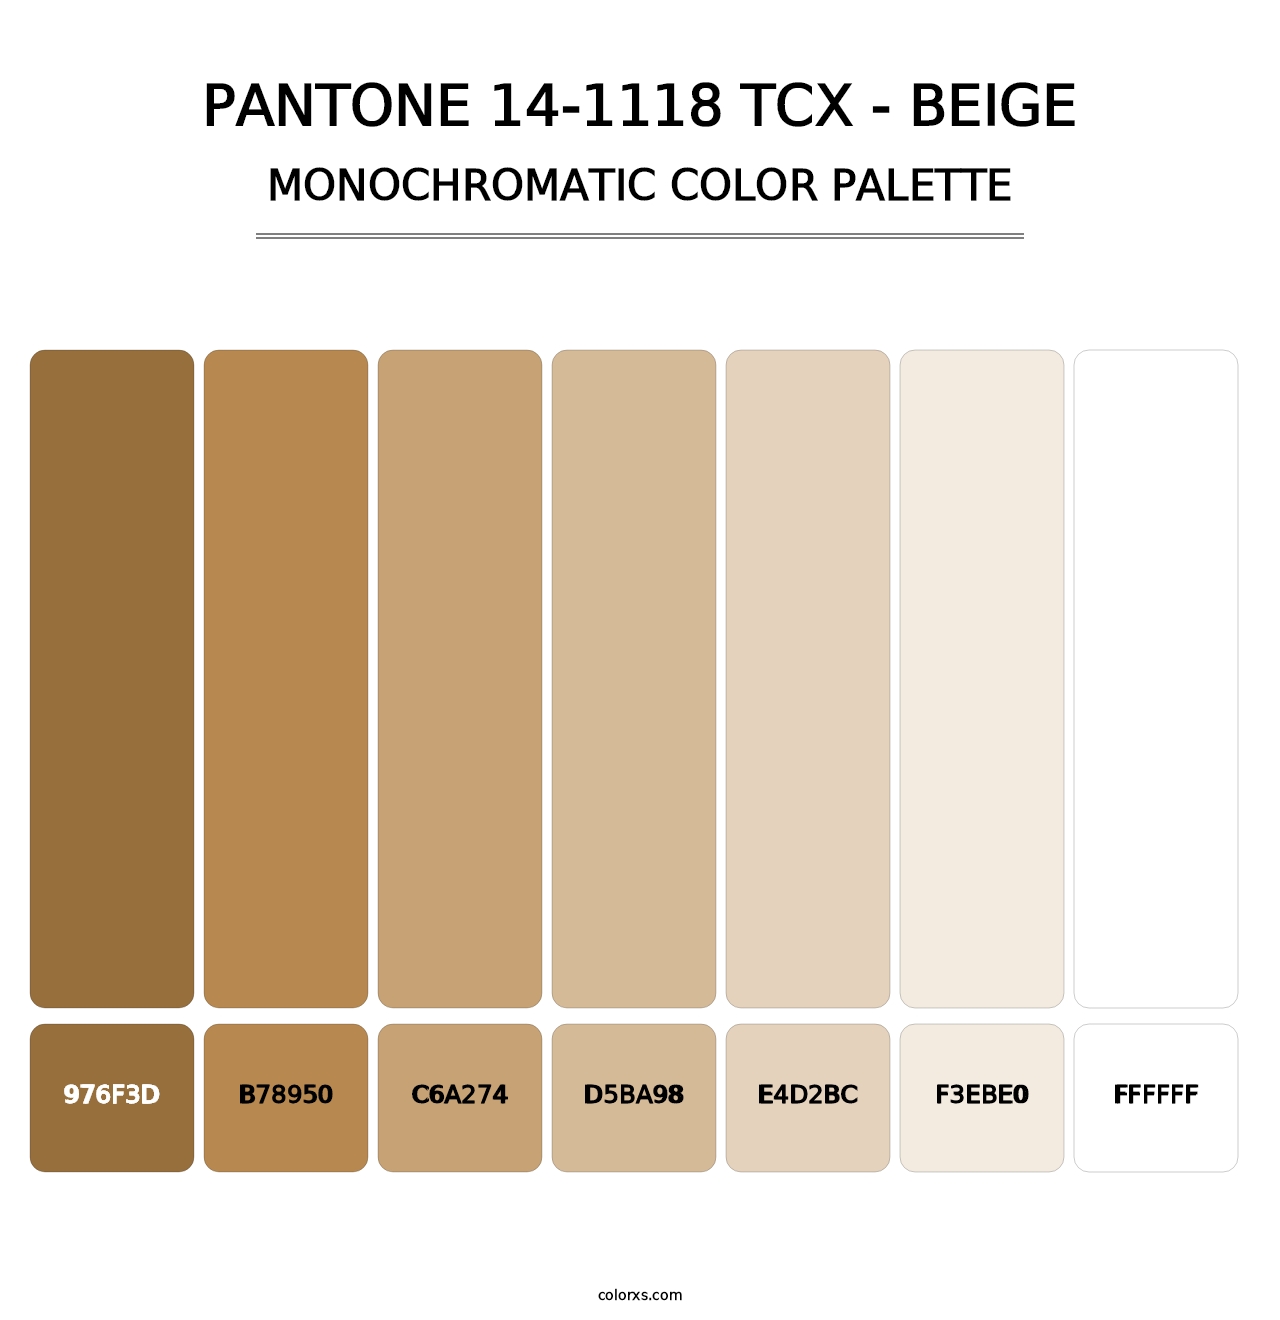 PANTONE 14-1118 TCX - Beige - Monochromatic Color Palette